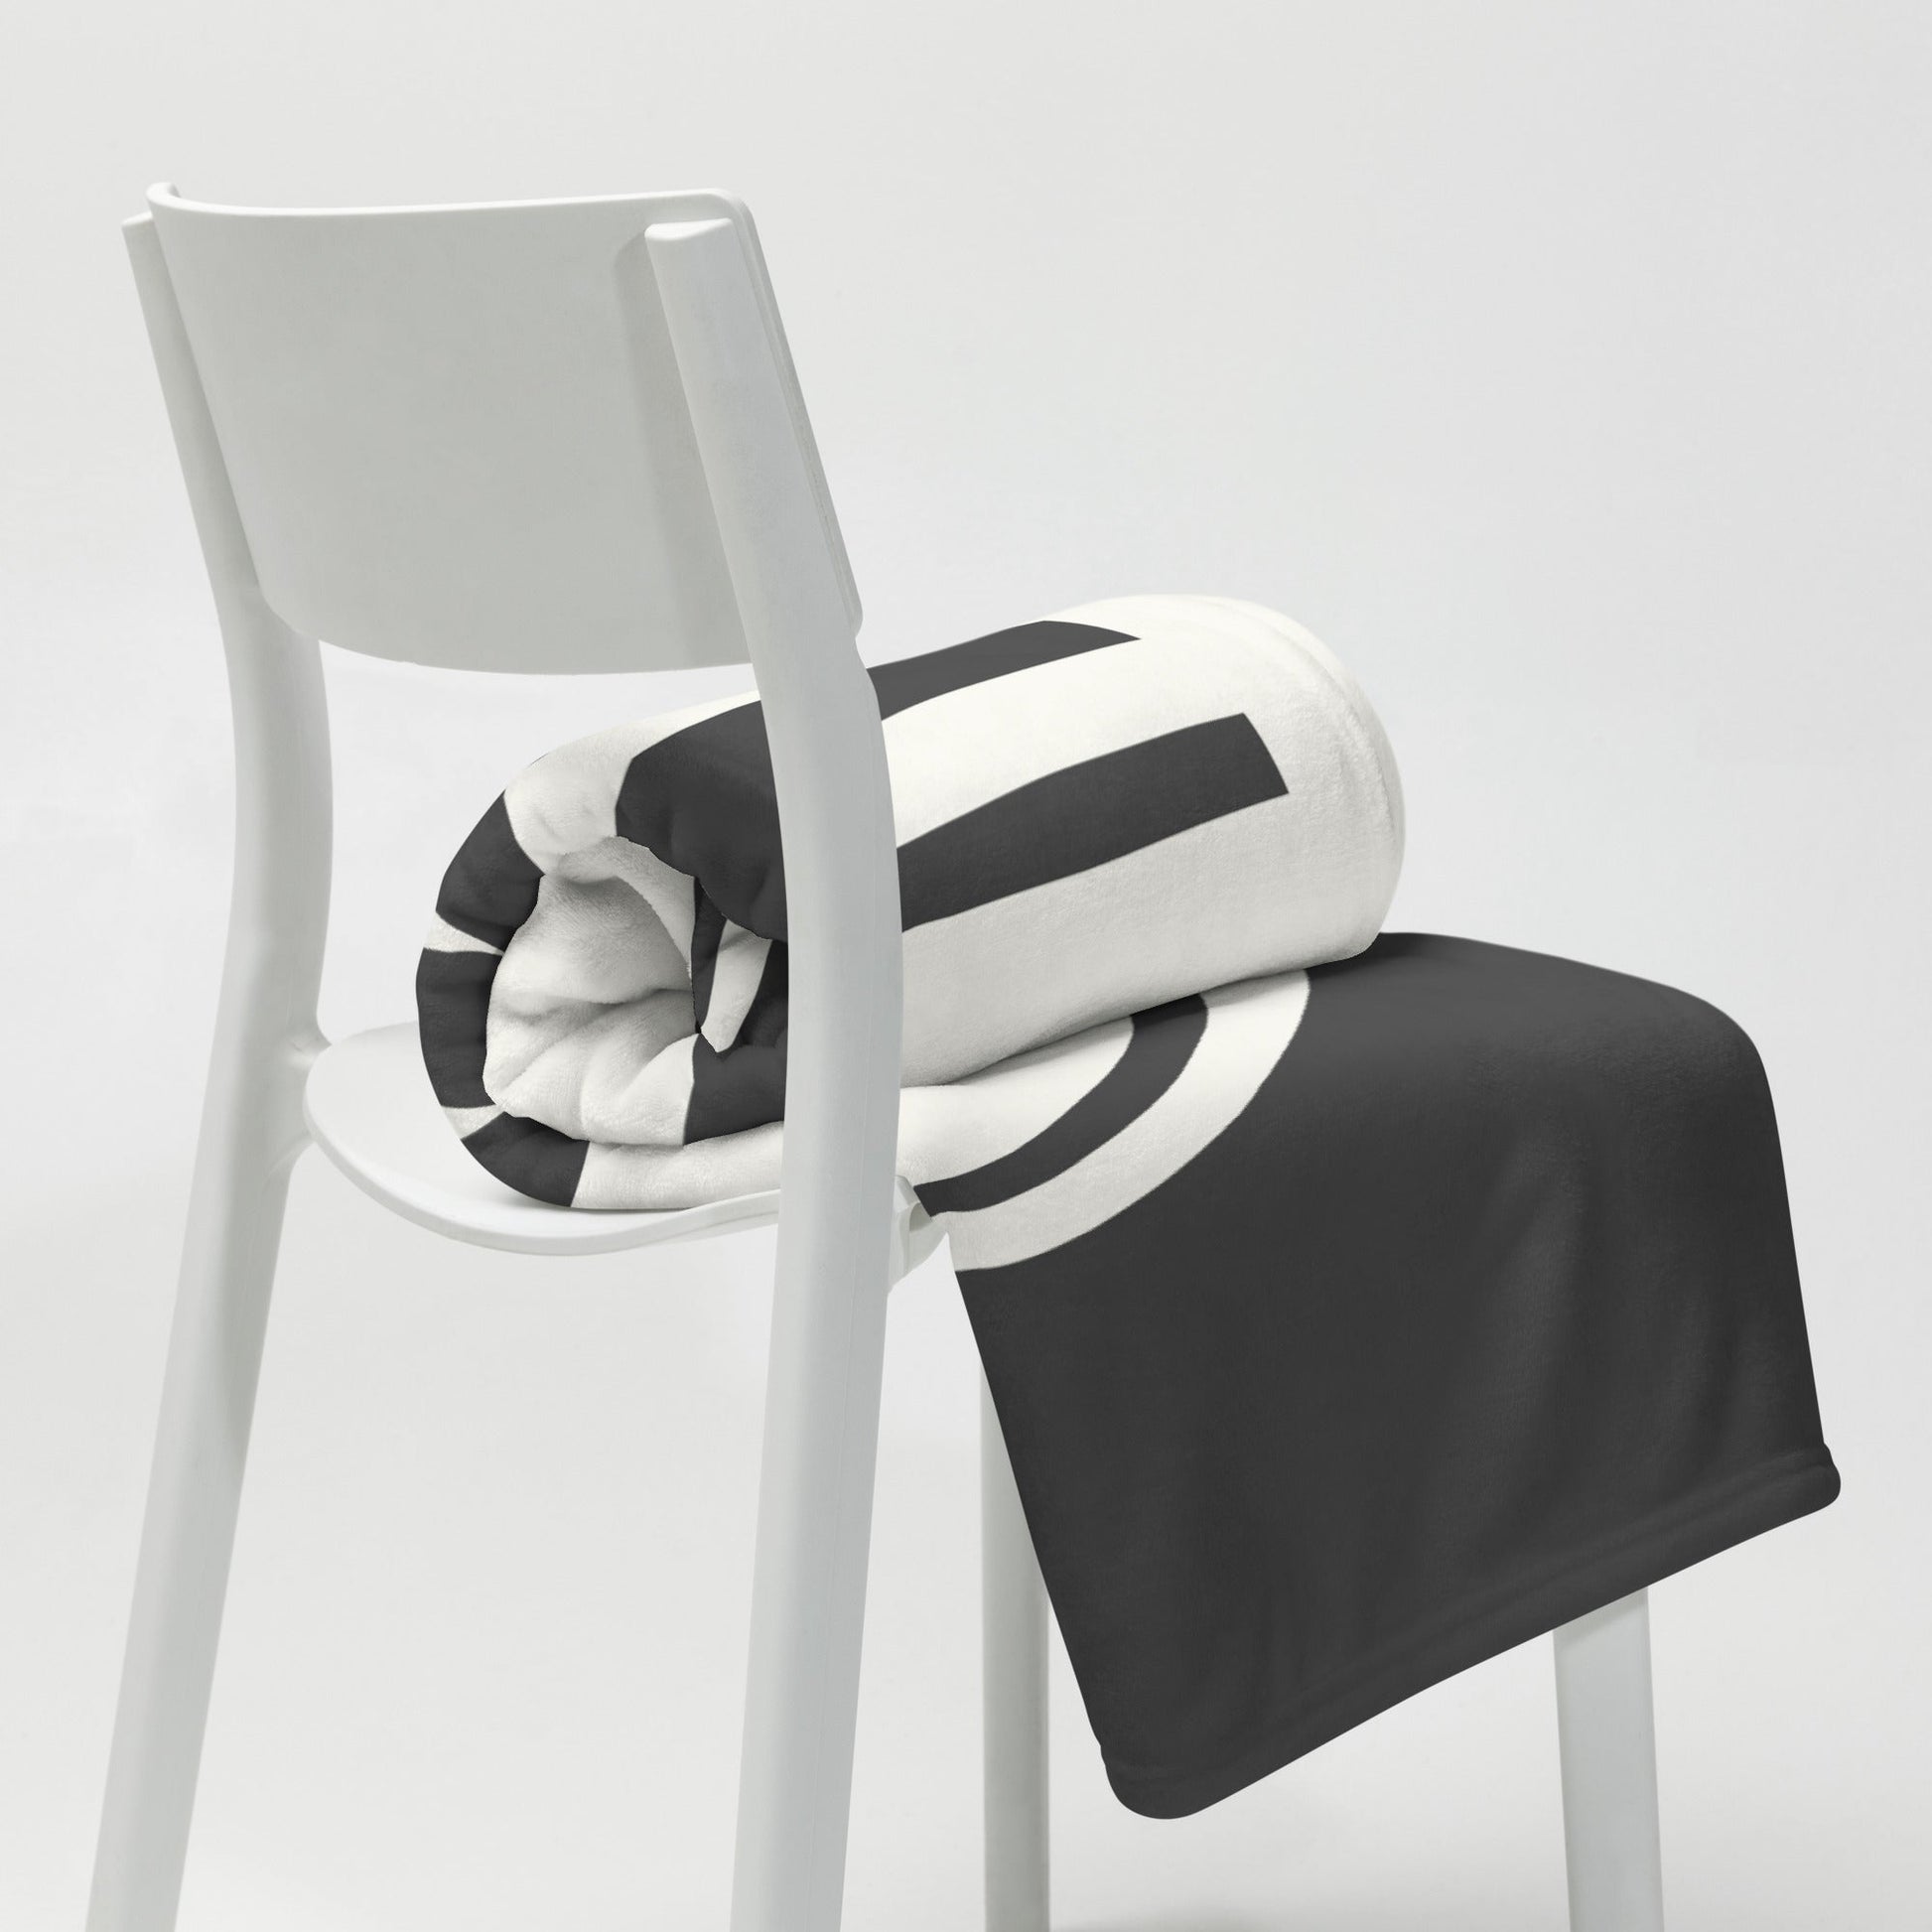 Unique Travel Gift Throw Blanket - White Oval • VIE Vienna • YHM Designs - Image 03